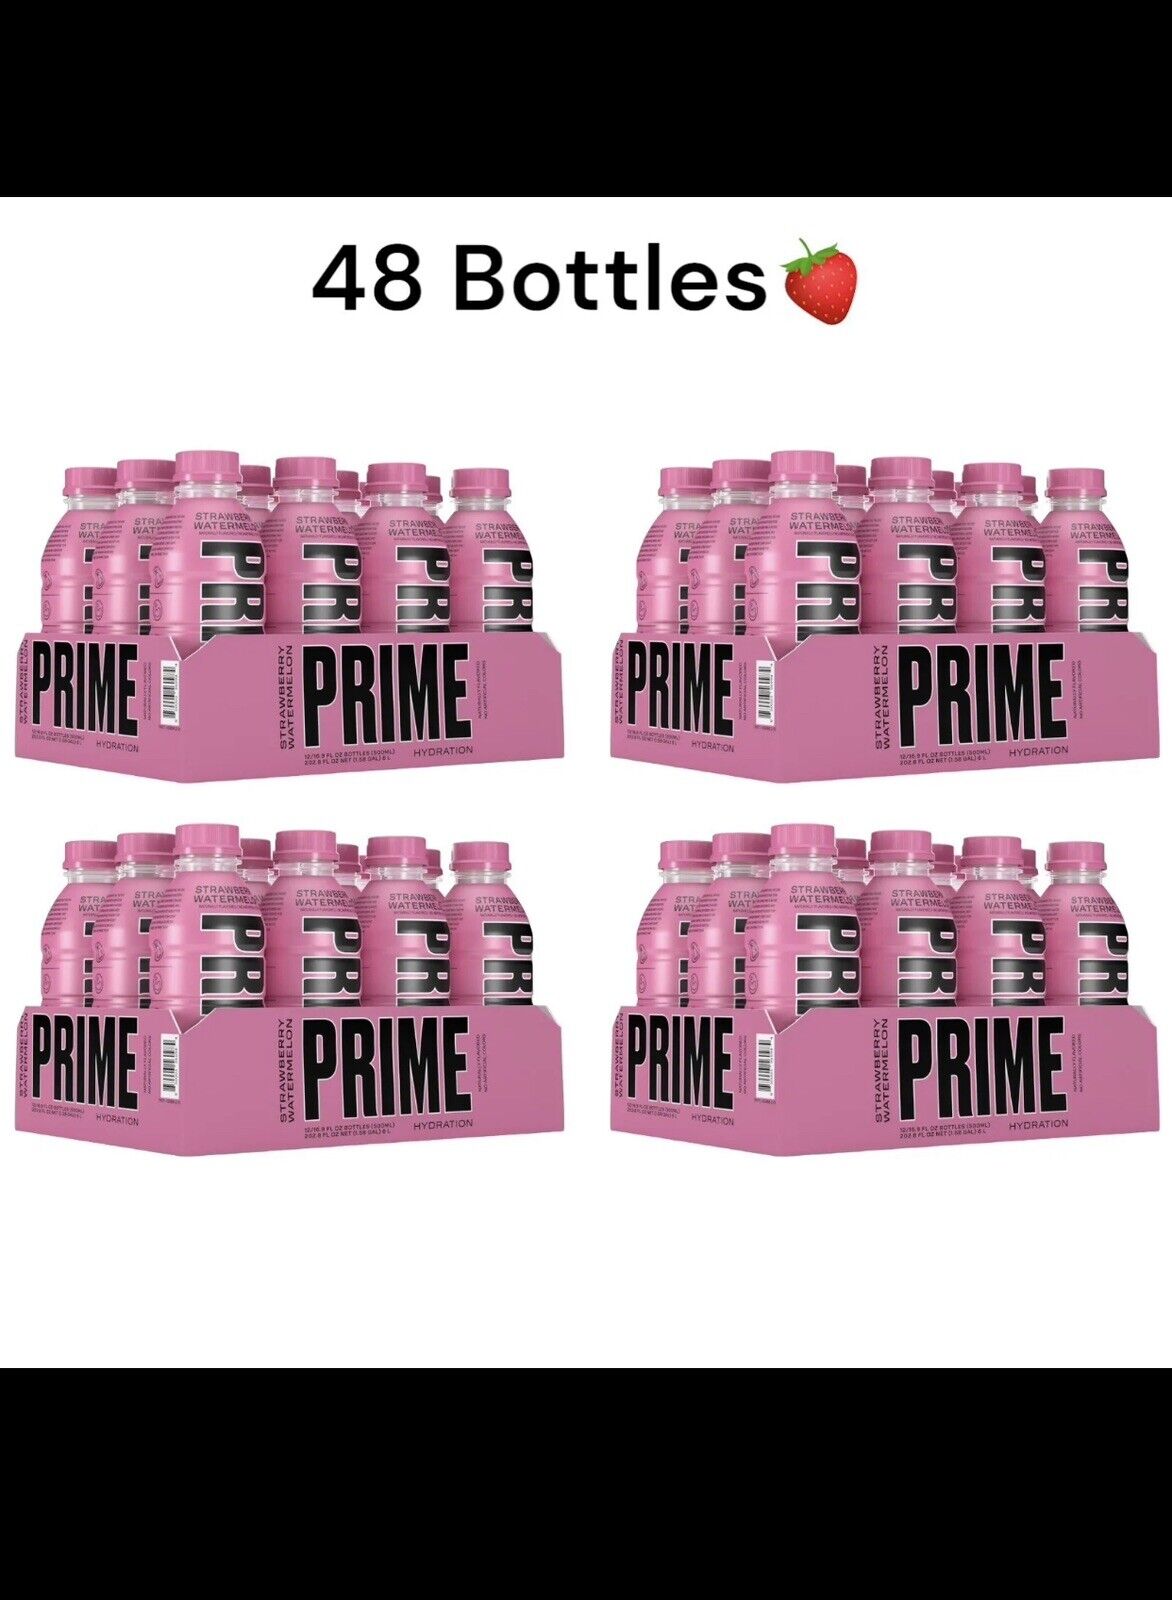 Prime Hydration Drinks 12 Pack 16.9oz Bottles Bulk Deal By Logan Paul x KSI🍓